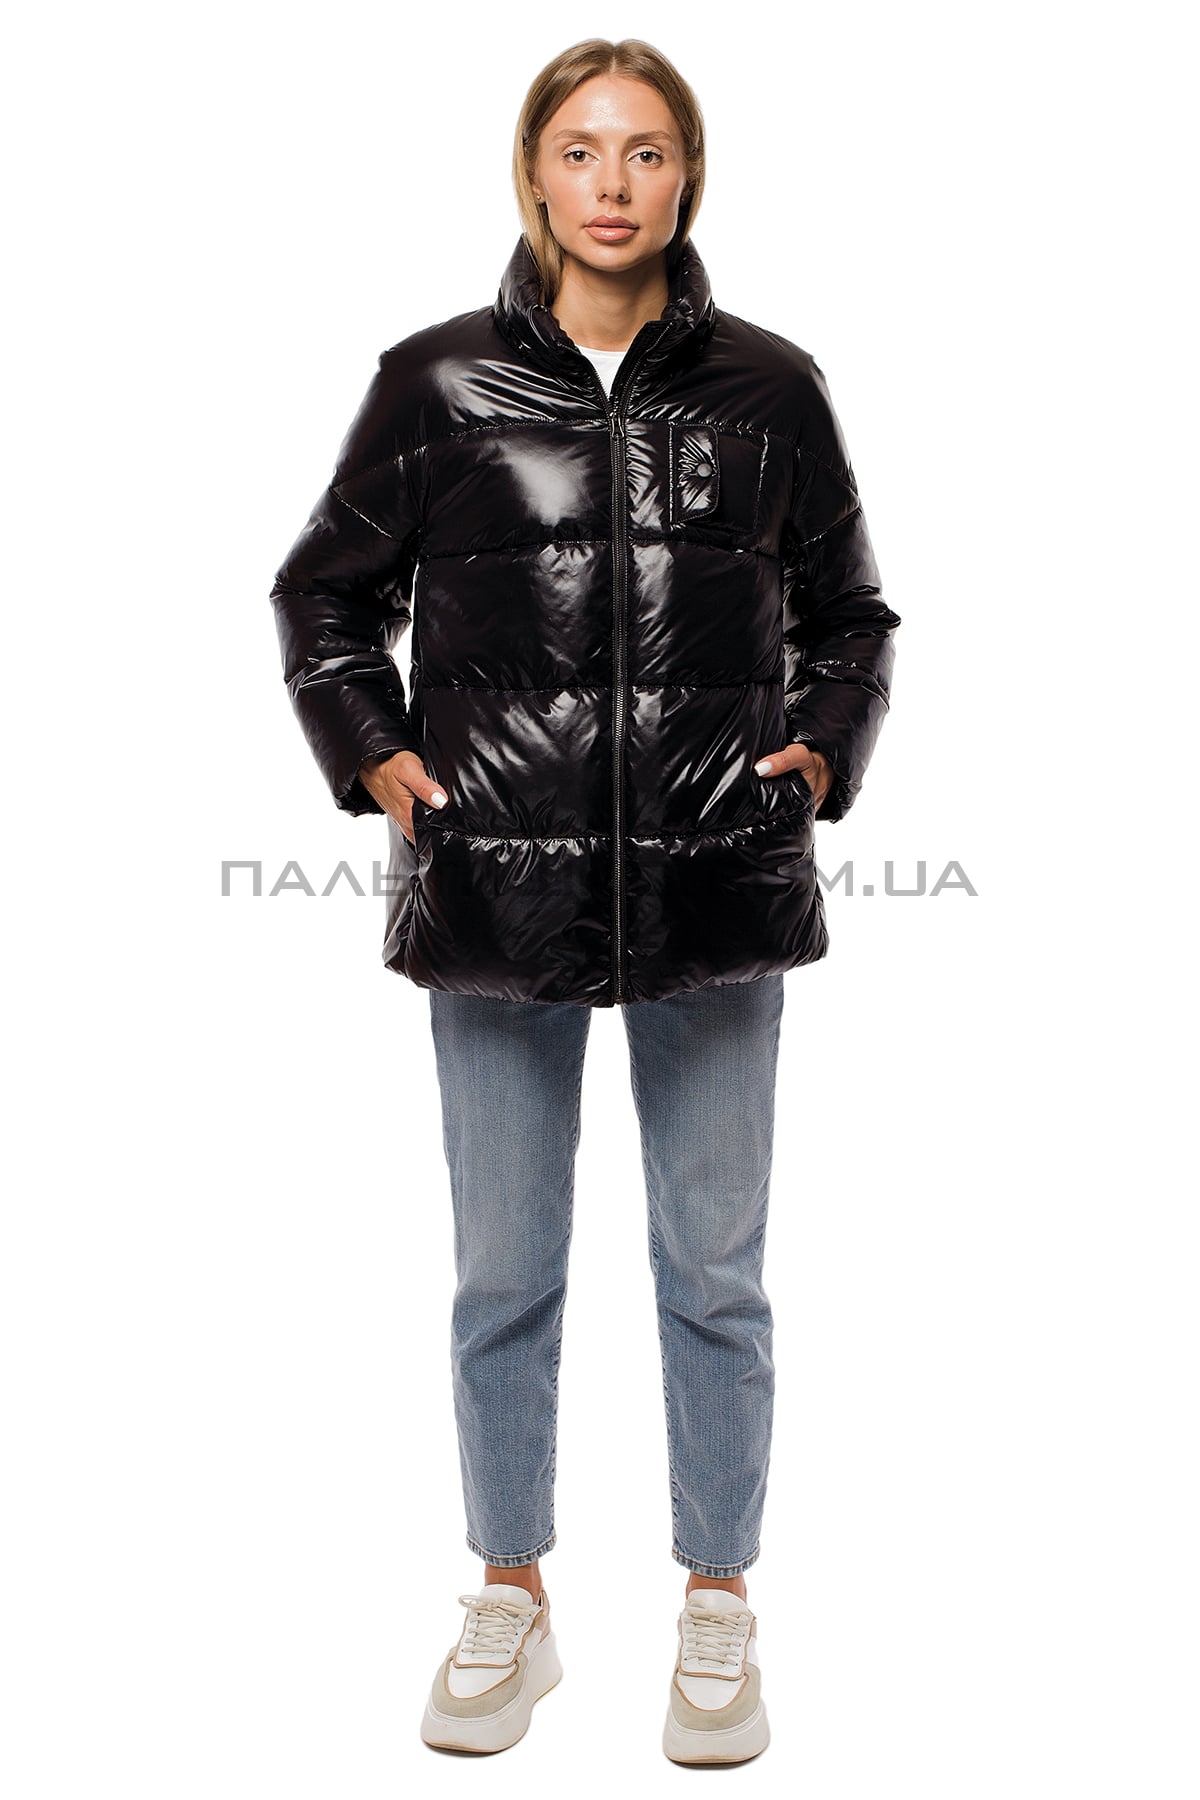  Жіноча зимова куртка чорна з поясом